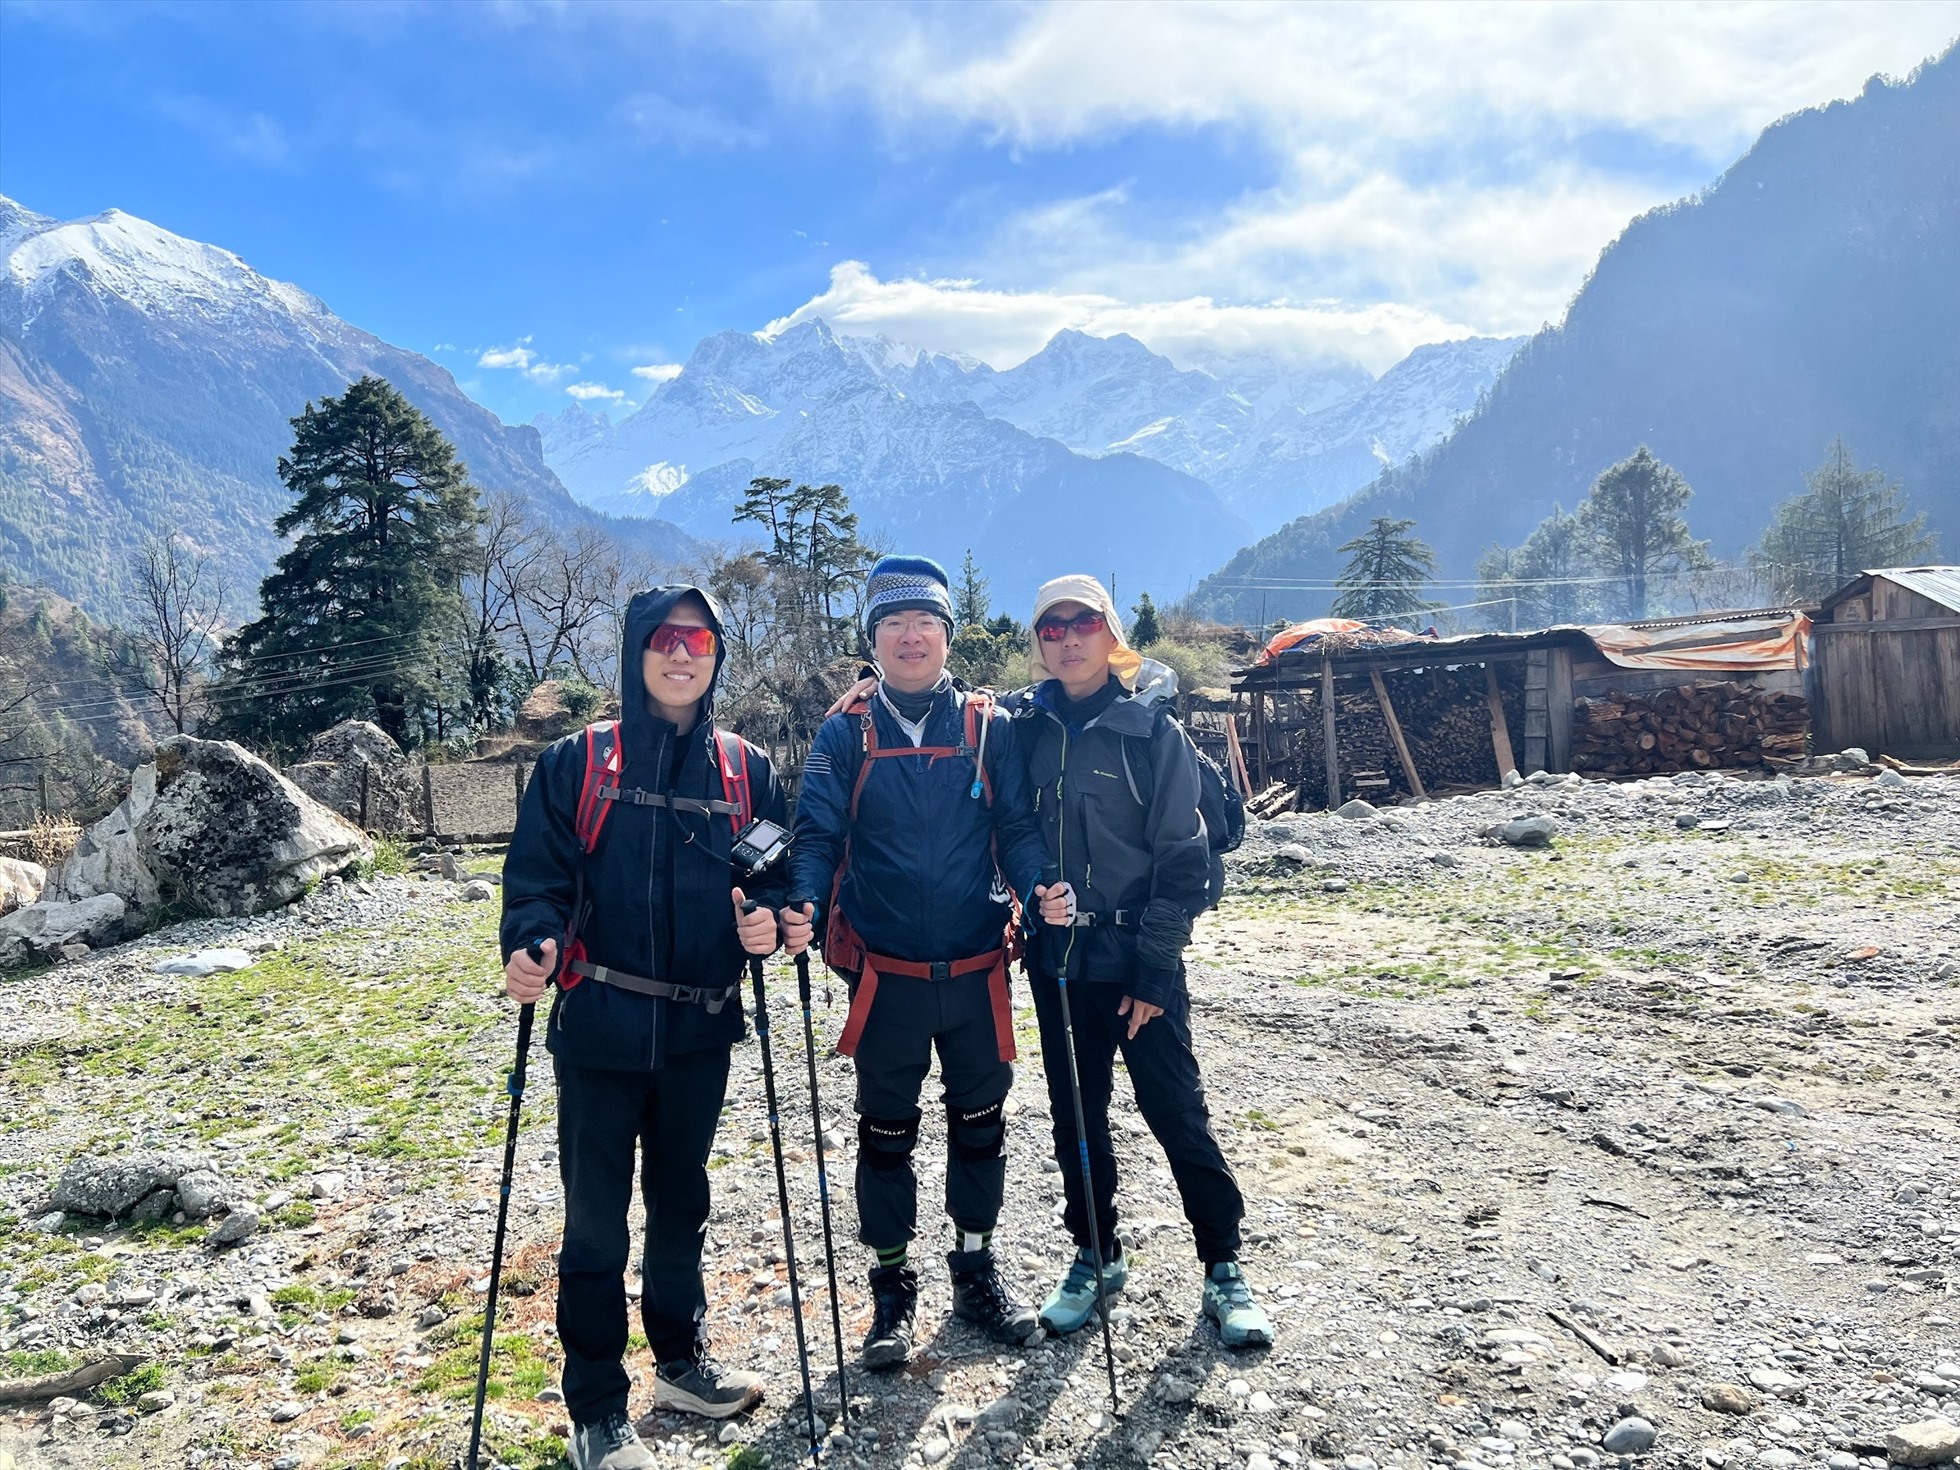 Duy Luân cùng đồng đội chụp ảnh trên đường trekking, phía xa là dãy núi với Manaslu cao 8.163 m. Ảnh: Nhân vật cung cấp